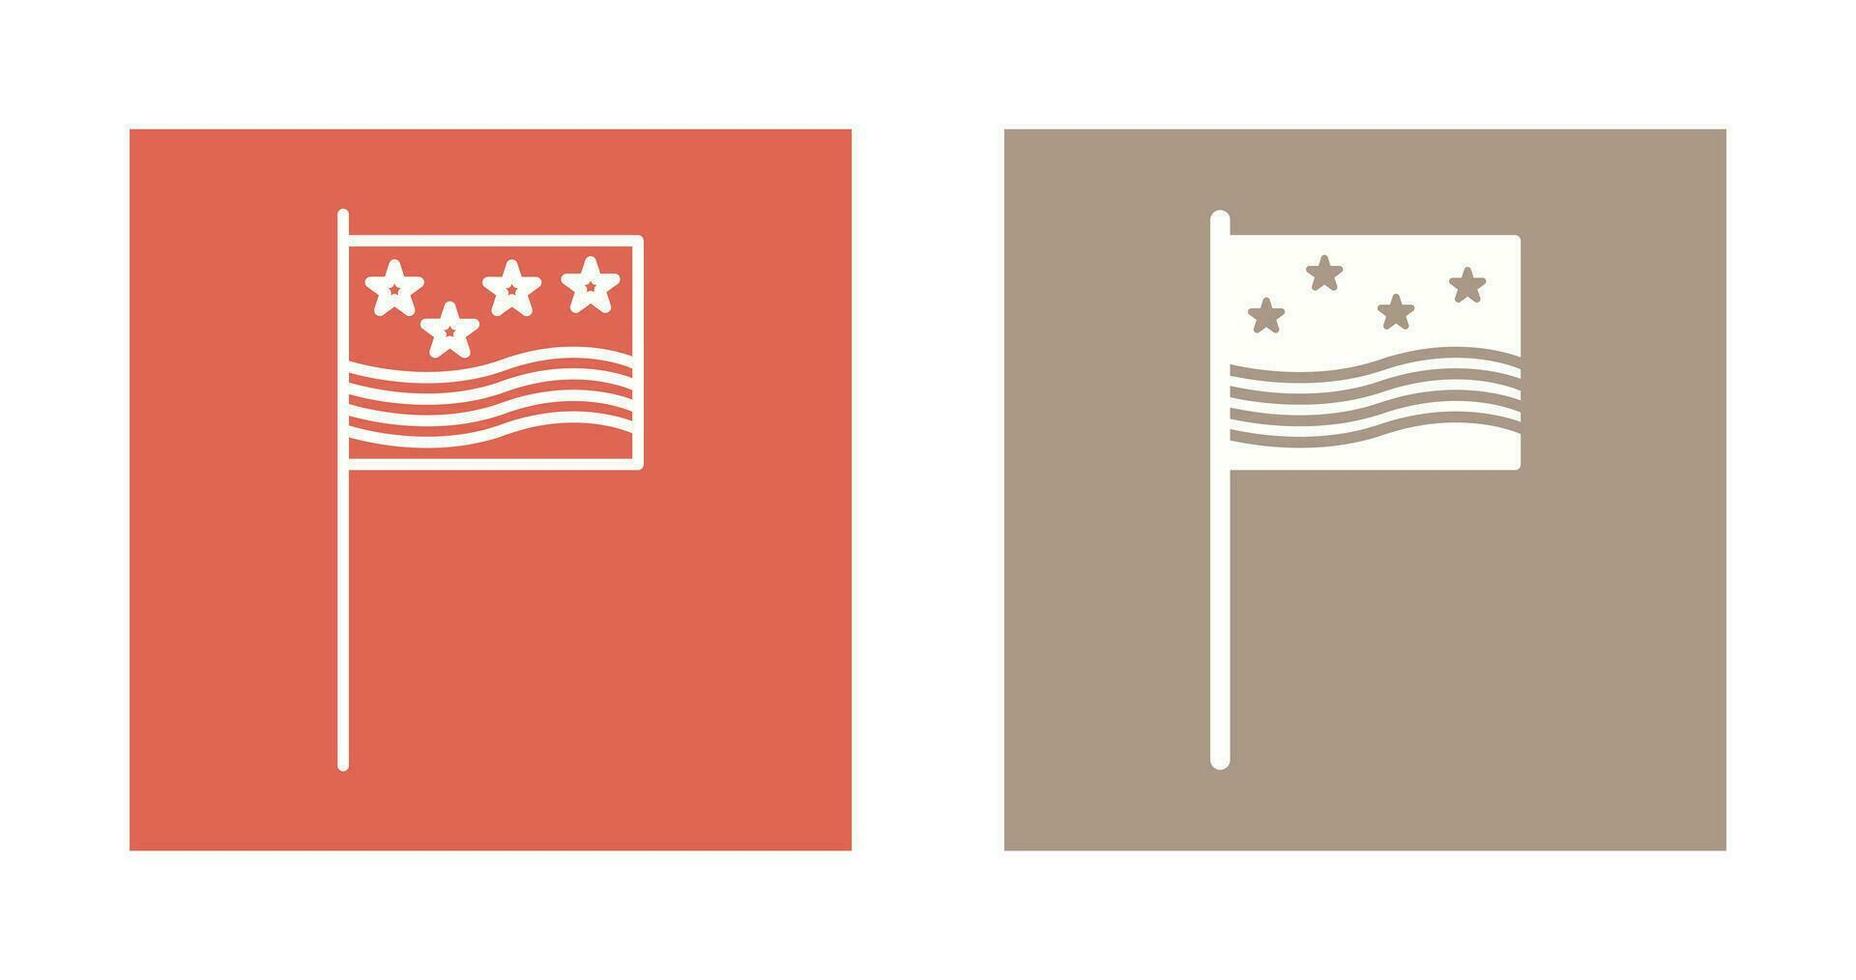 ícone de vetor de bandeiras